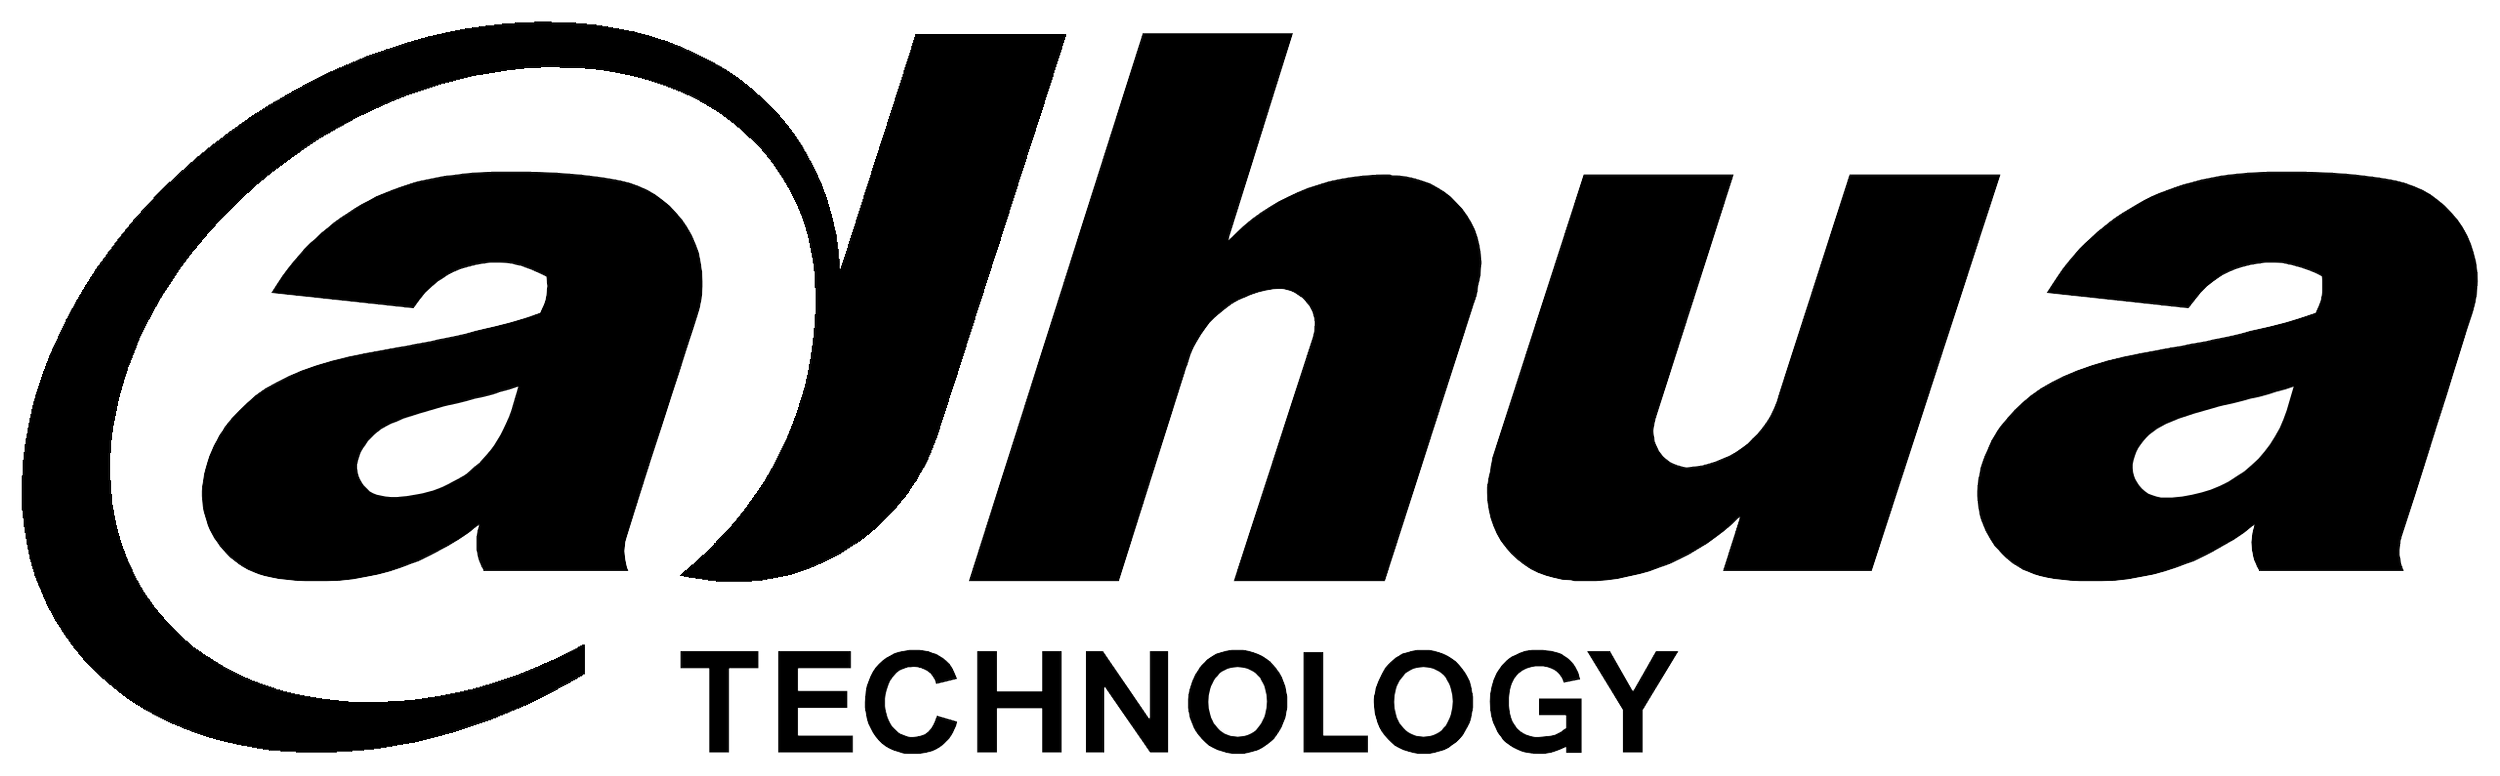 Dahua_Technology_logo.svg.png